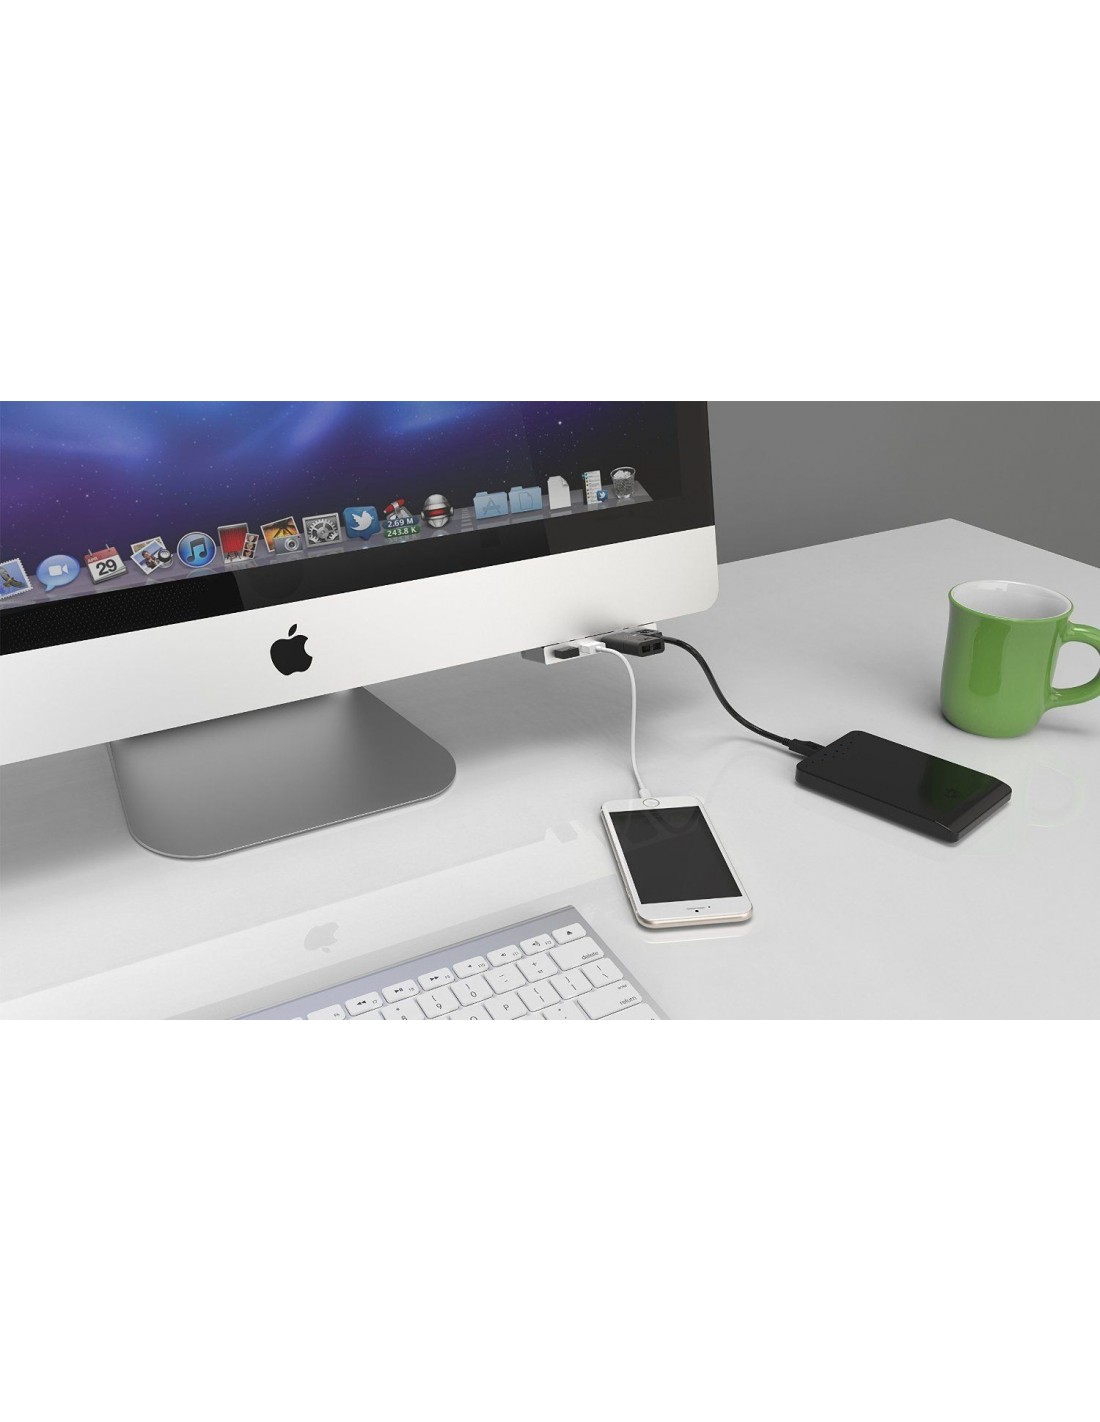 SABRENT Premium 4-Port Aluminum USB 3.0 Hub For iMac Slim Unibody HB-IMCU